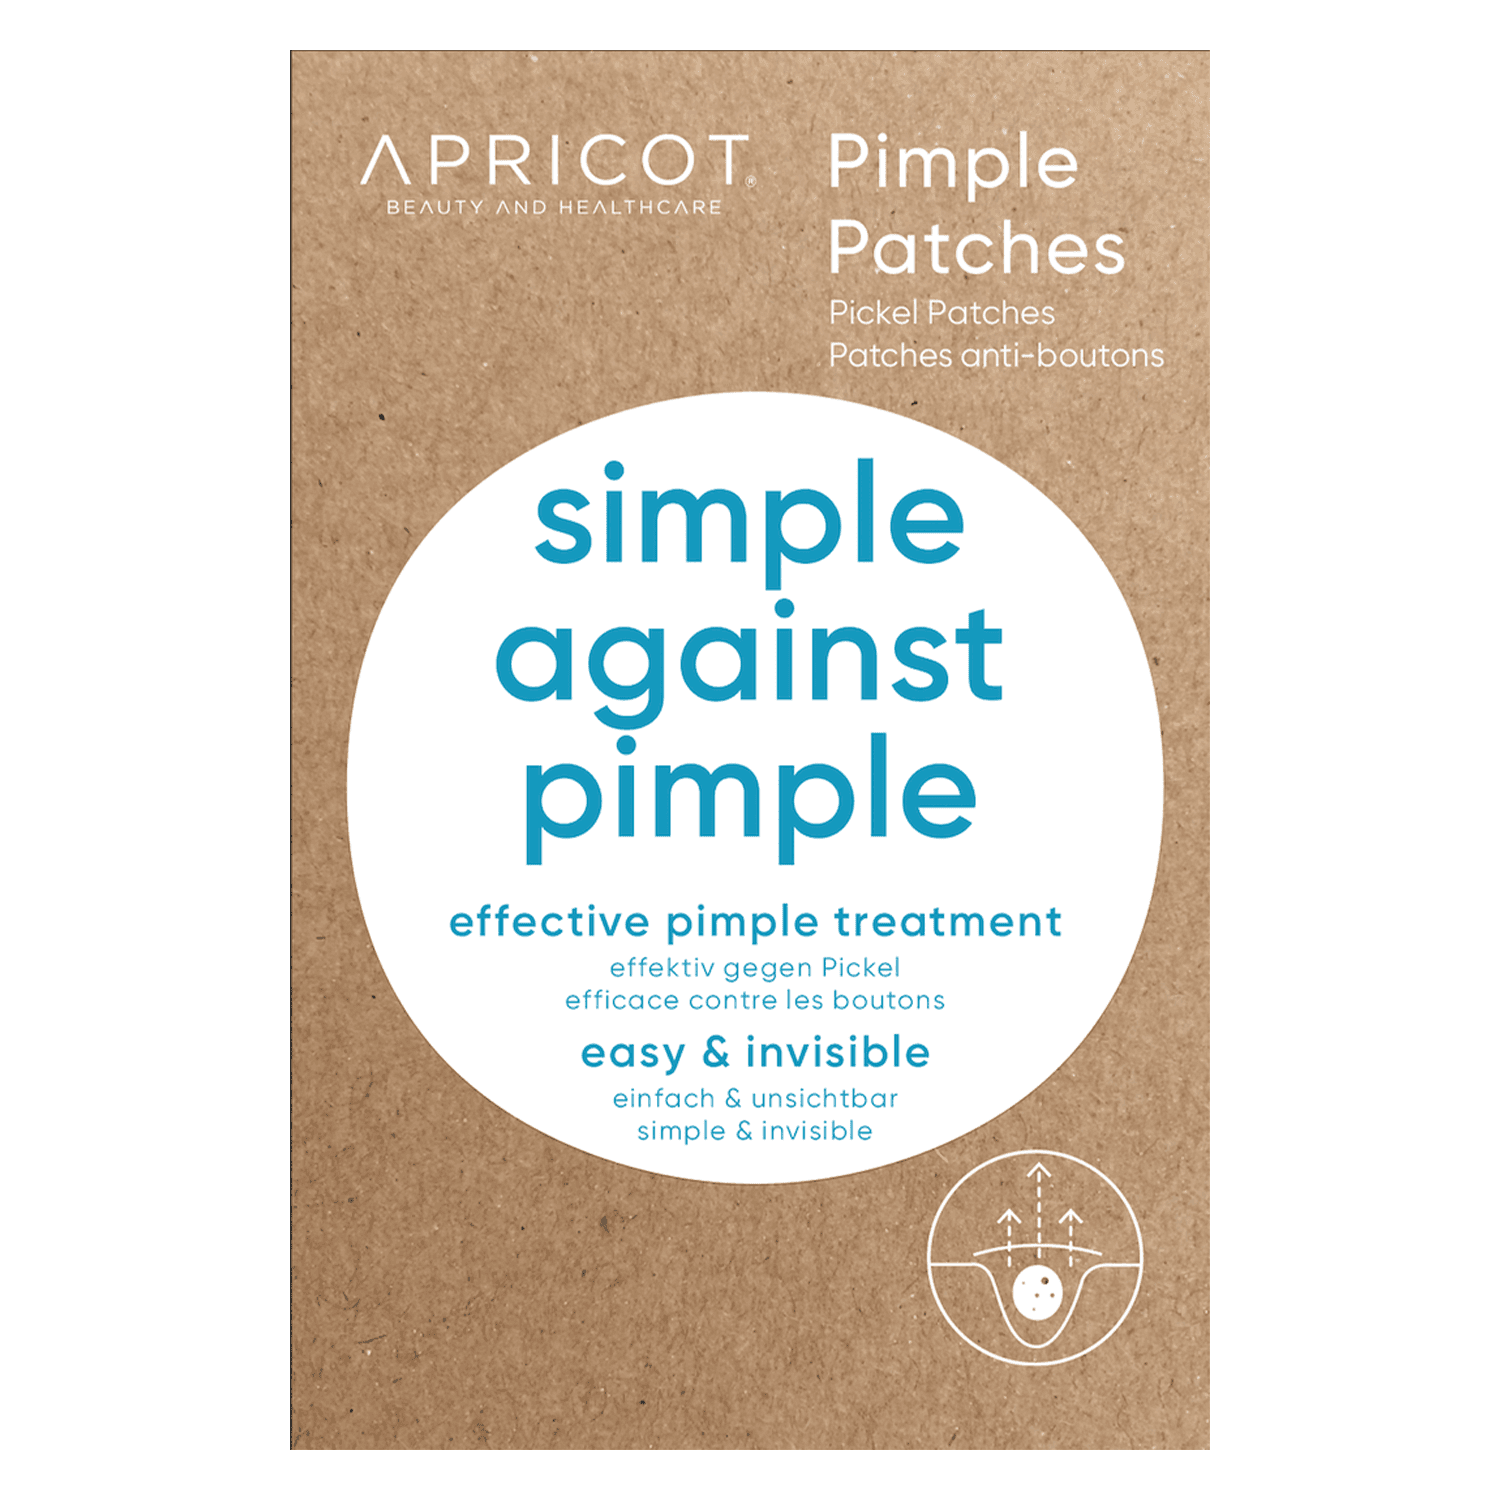 APRICOT - Pimple Patches Simple against Pimple